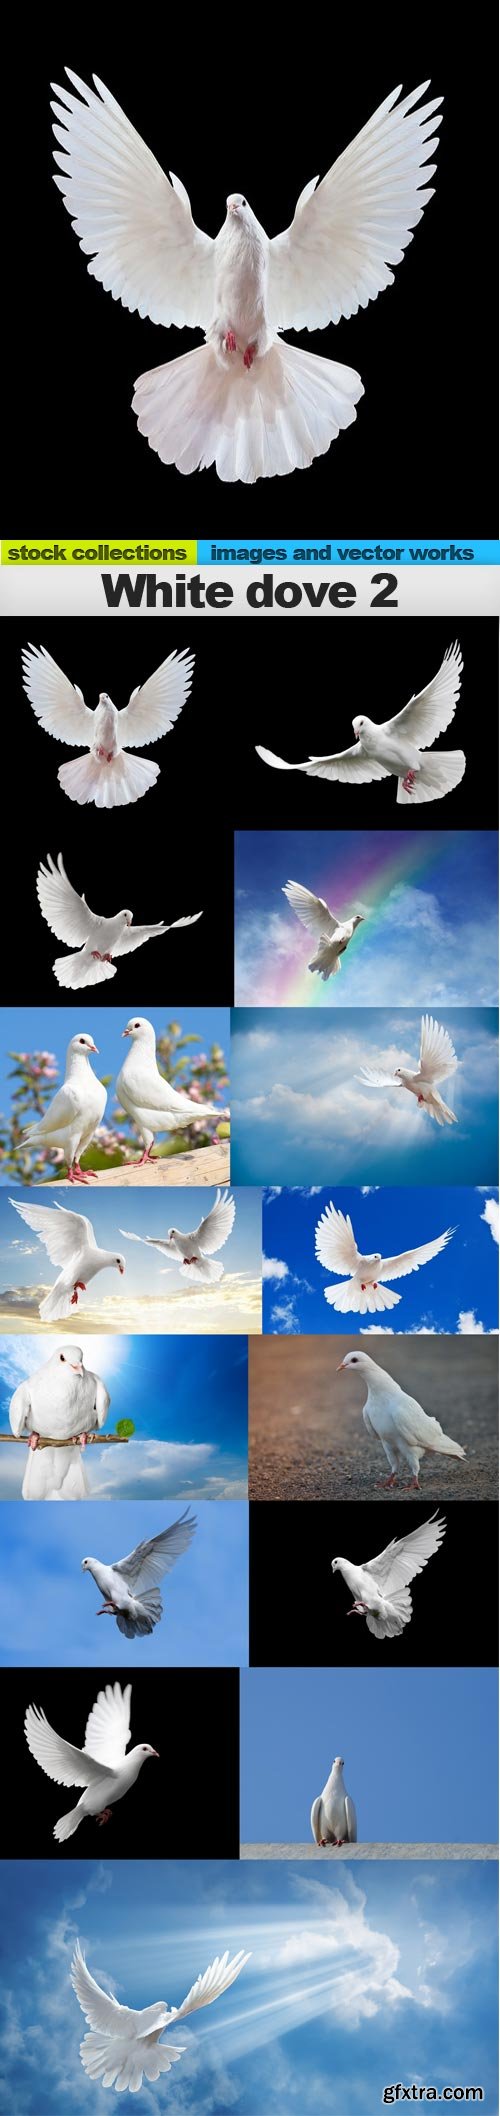 White dove 2, 15 x UHQ JPEG